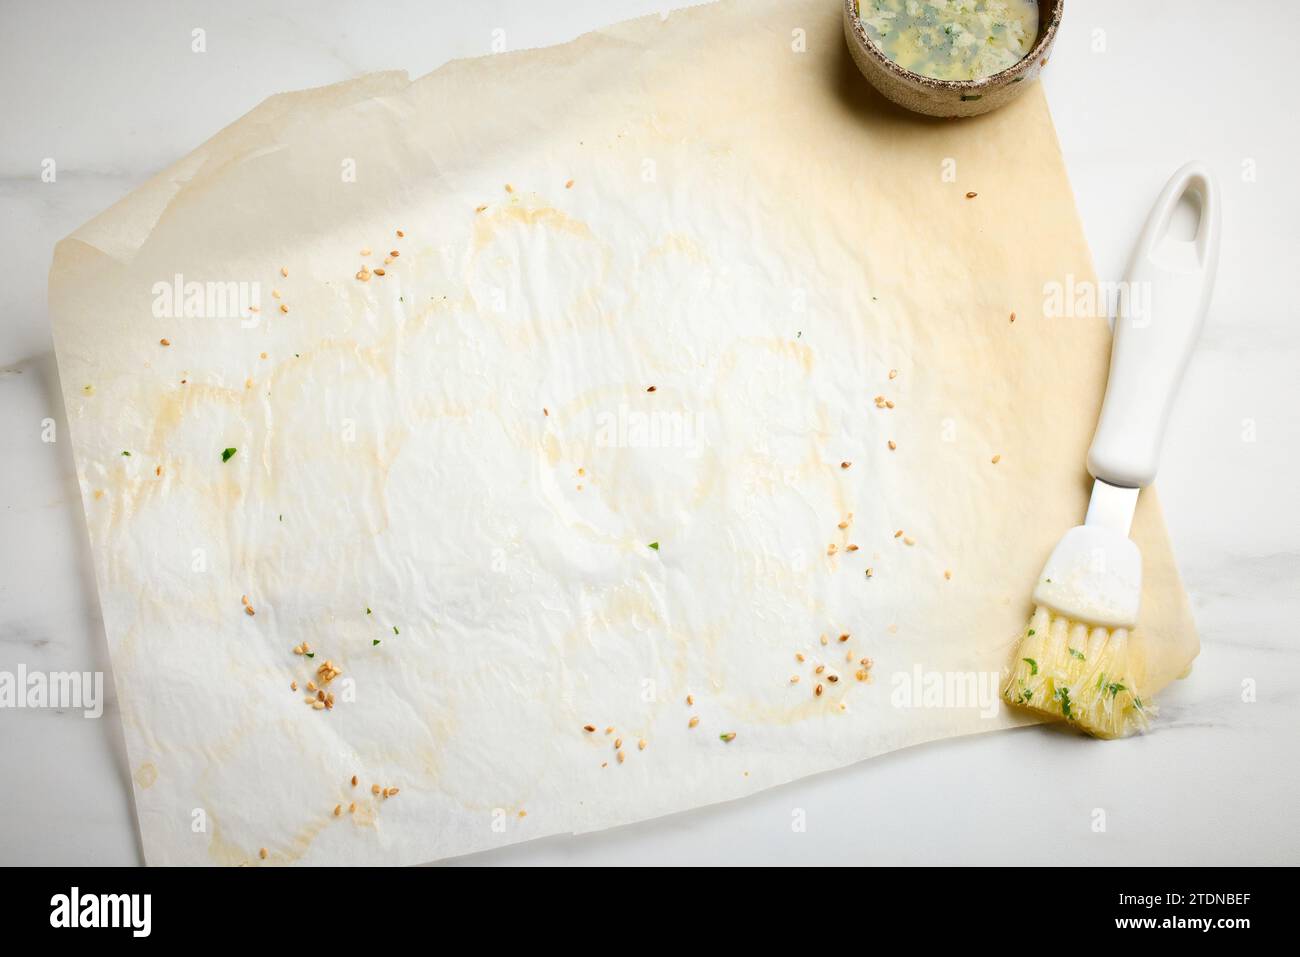 Leere gebrauchtes Backpapier nach dem Backen auf einem hellen Küchentisch, Draufsicht Stockfoto